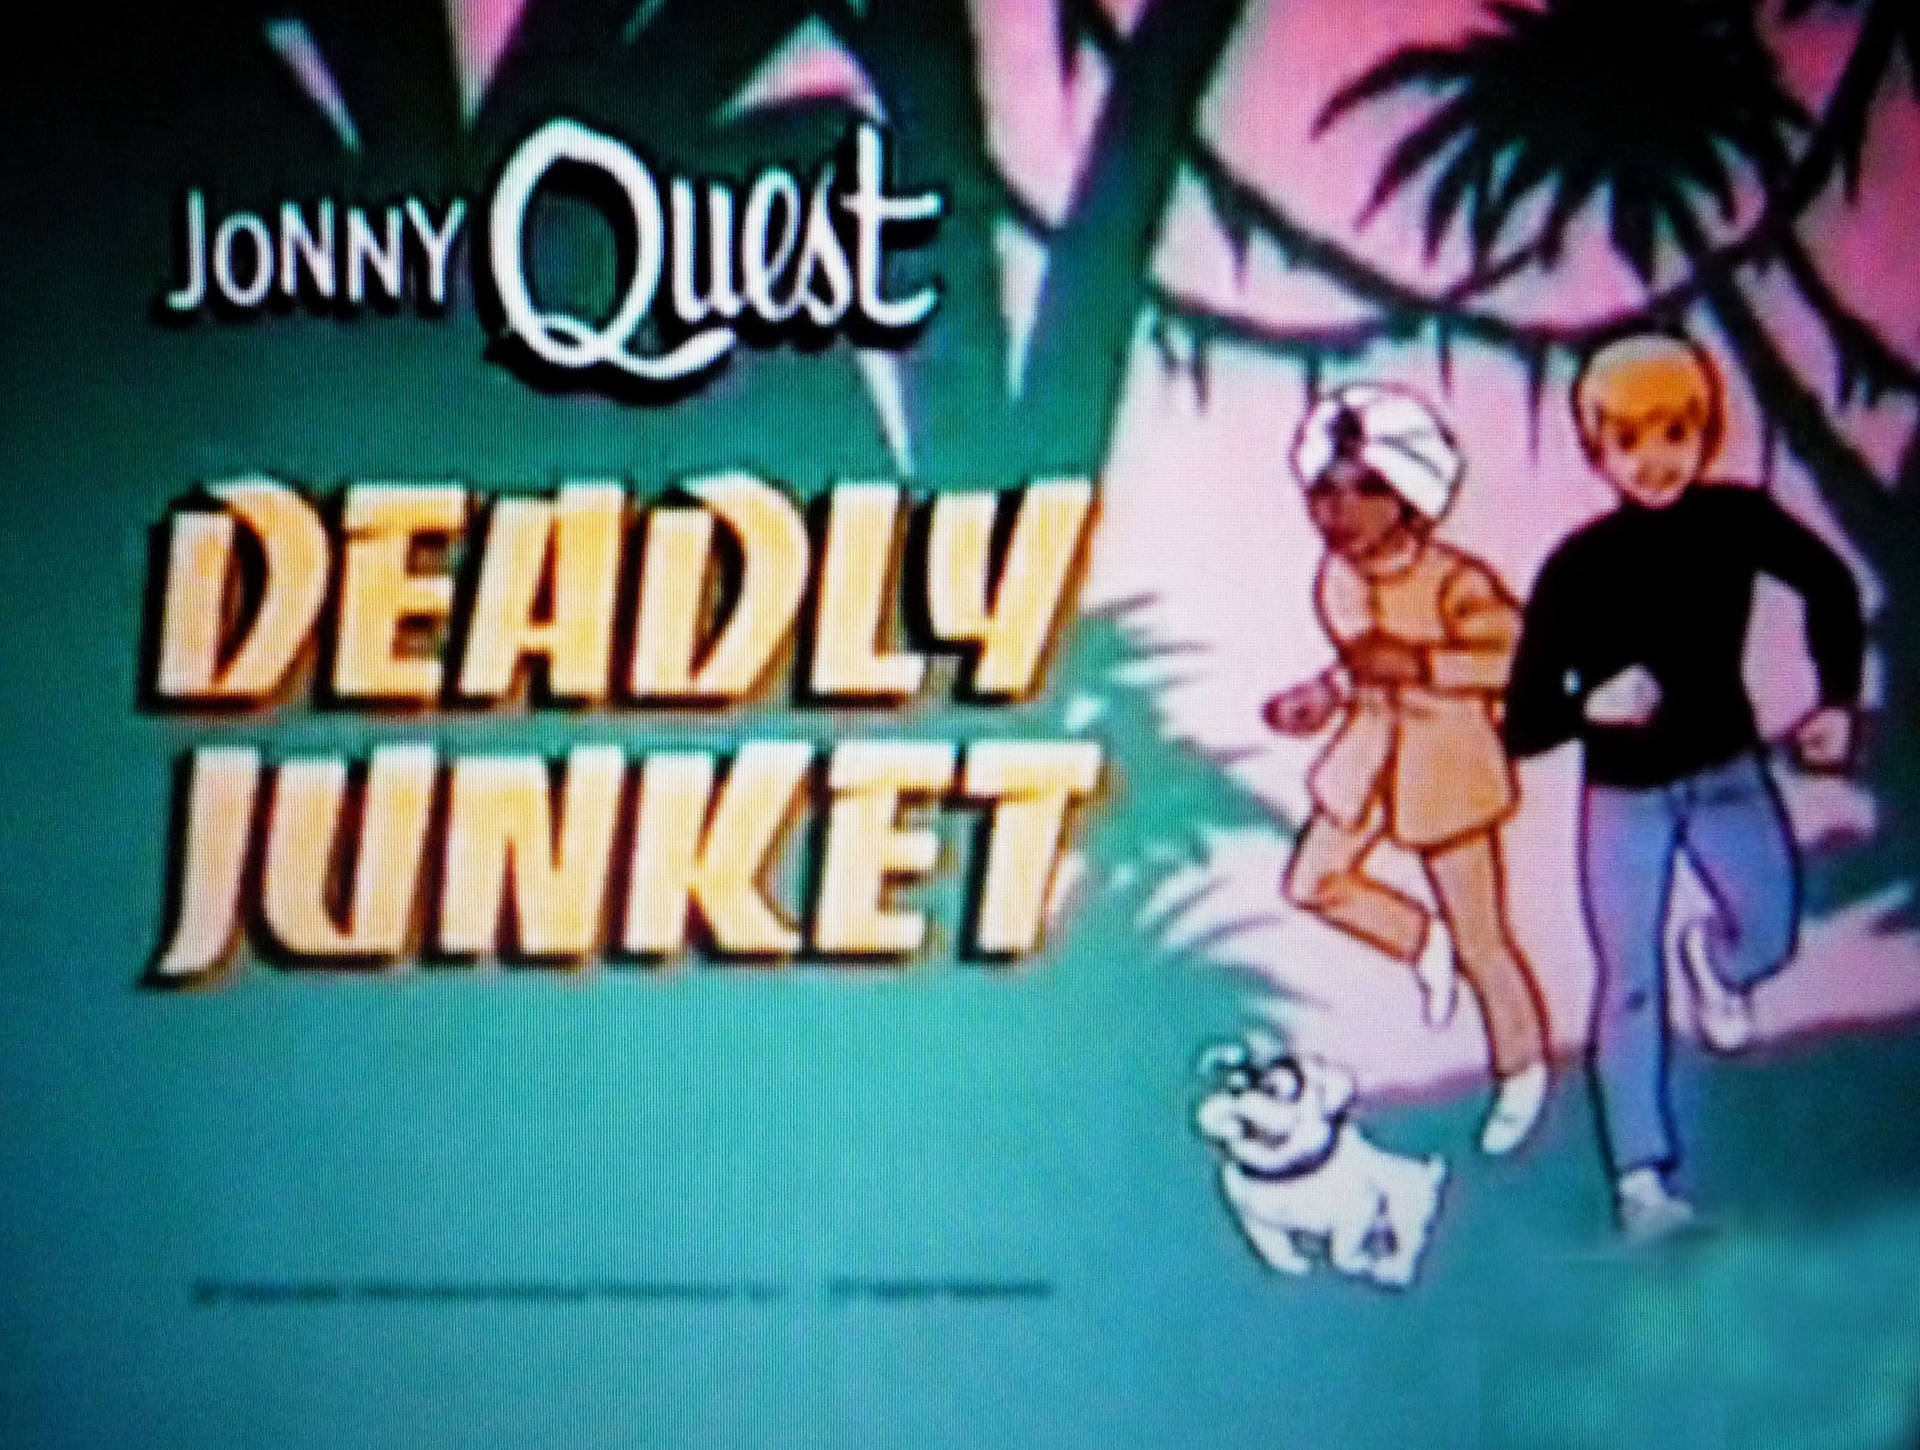 Jonny Quest Deadly Junket Wallpaper